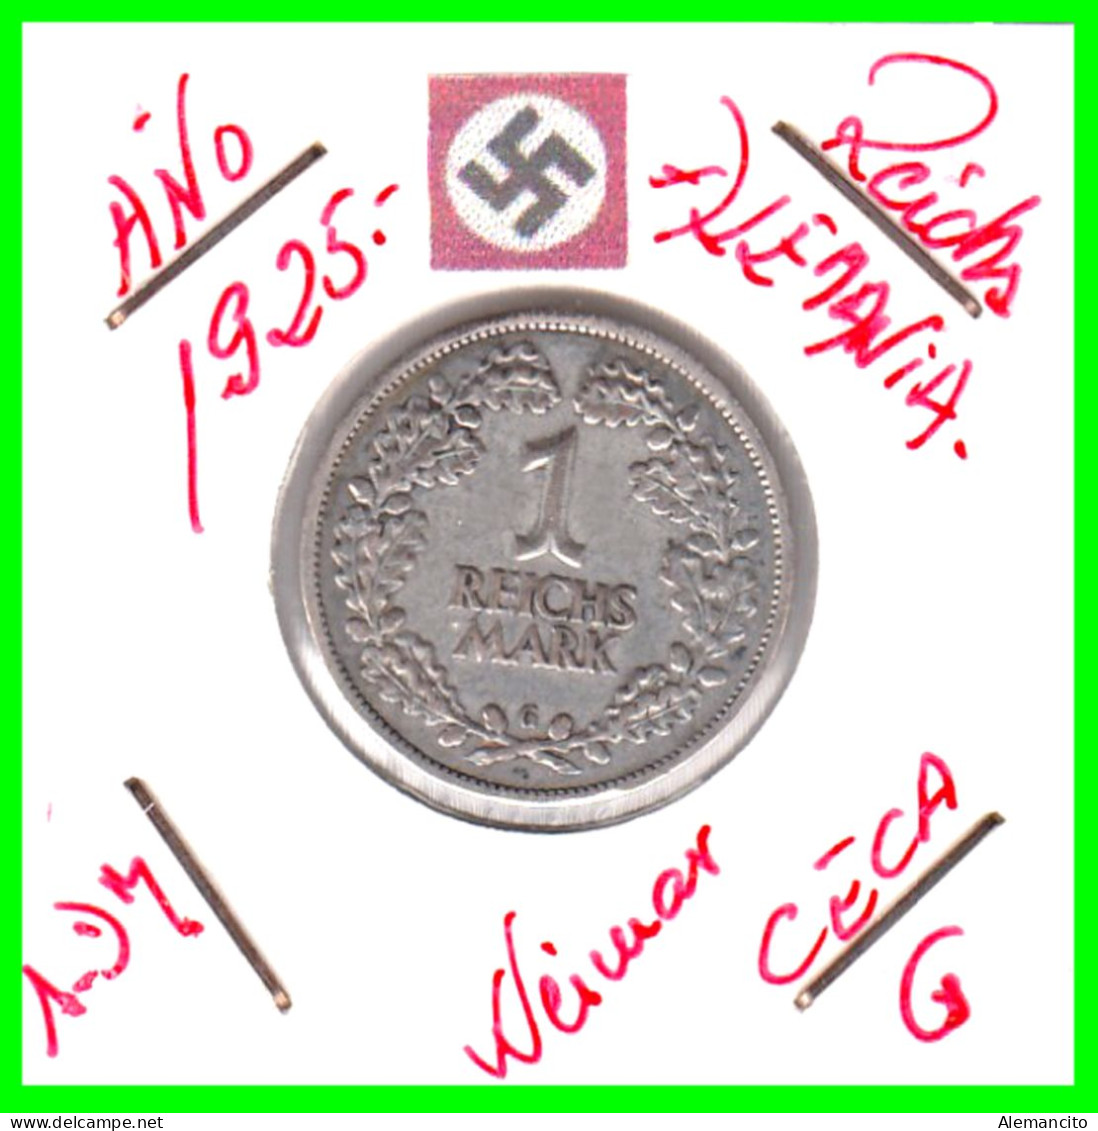 GERMANY REPÚBLICA DE WEIMAR 1 MARK ( 1925 CECA - G )  ( DEUTSCHES REICHSMARK KM # 44 ) - 1 Mark & 1 Reichsmark